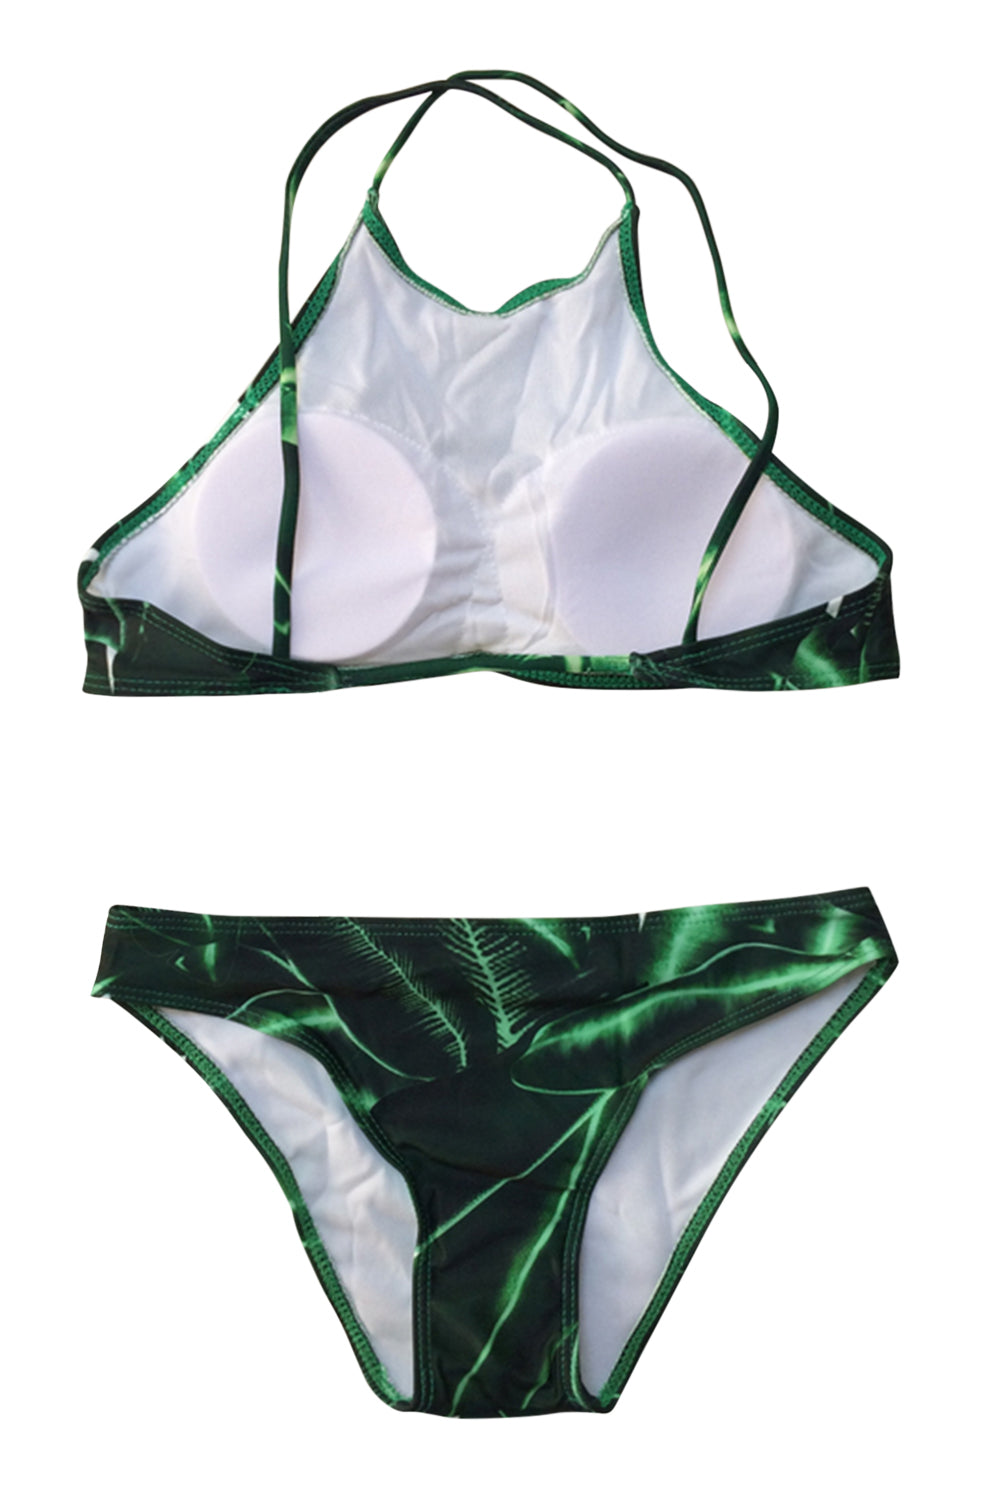 Iyasson Leaves printing Backless Halter Bikini Set